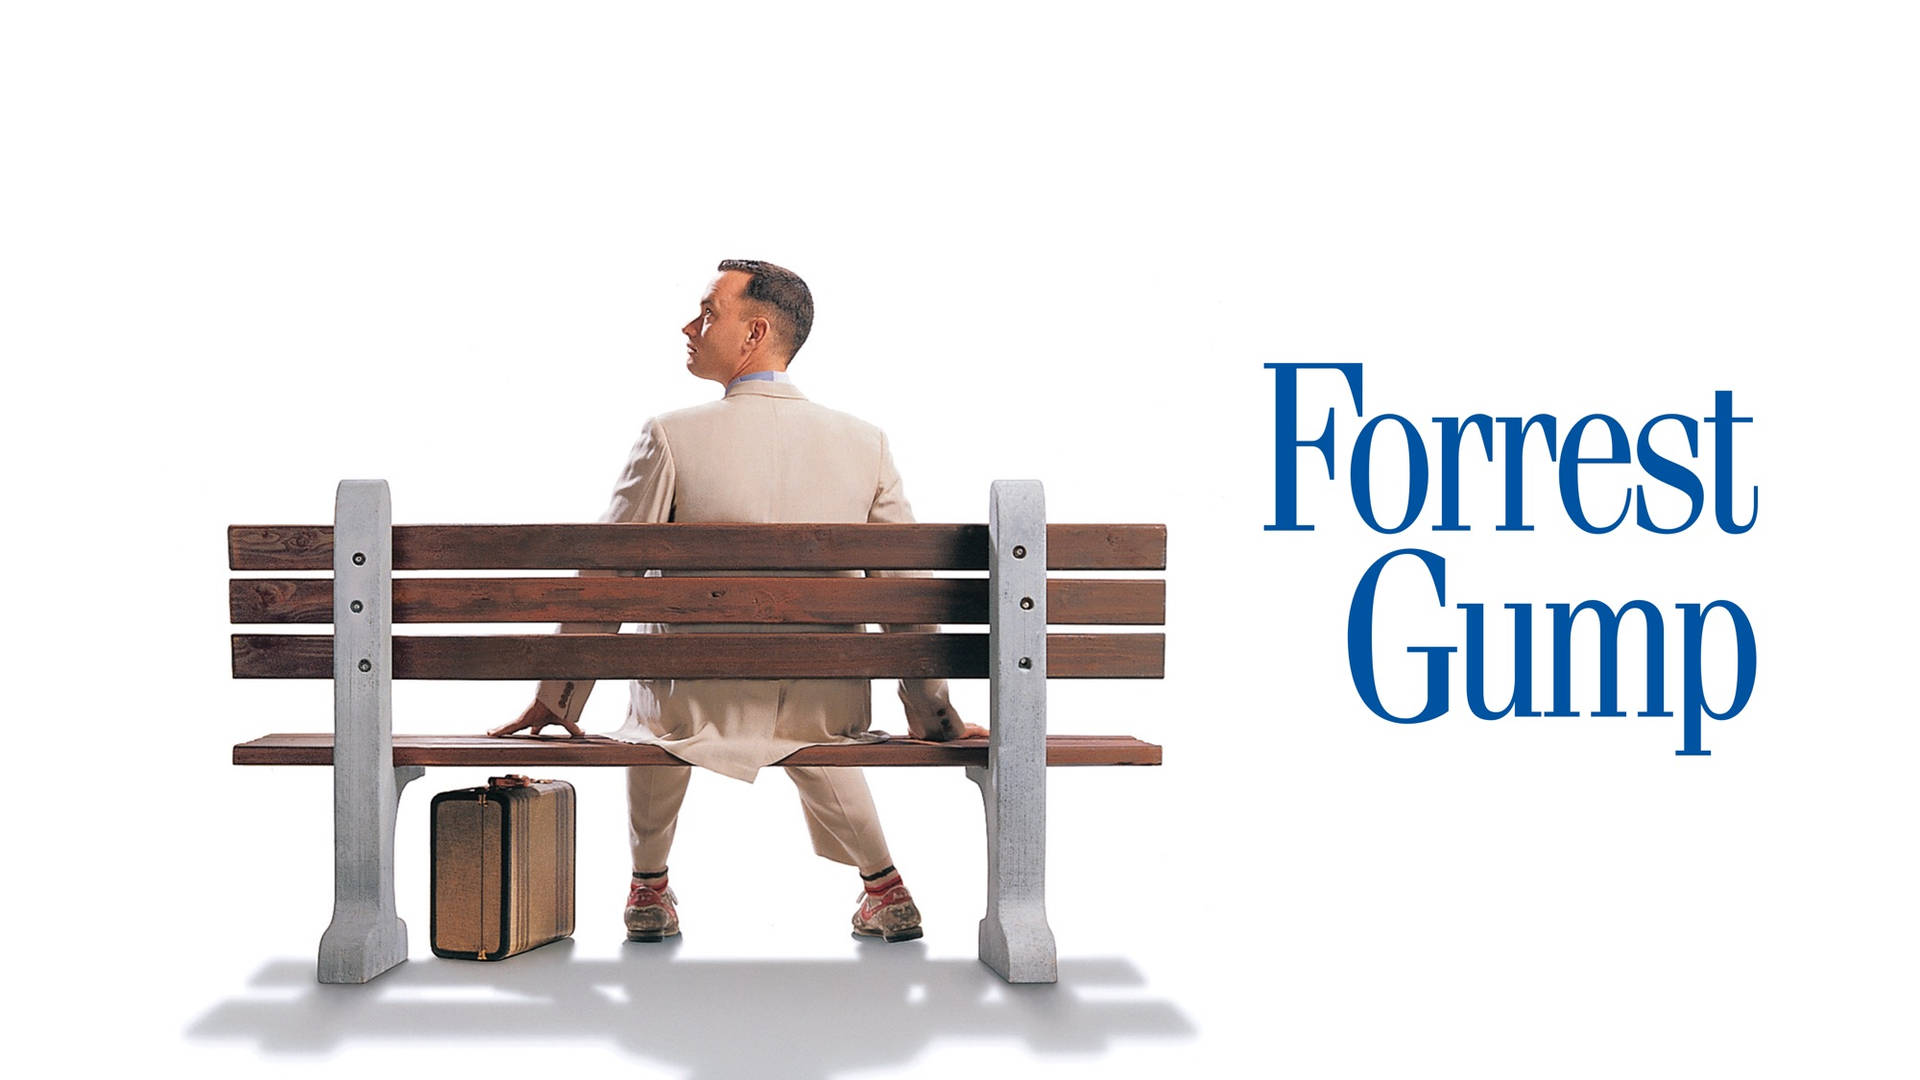 Tom Hanks Quality Forrest Gump Poster